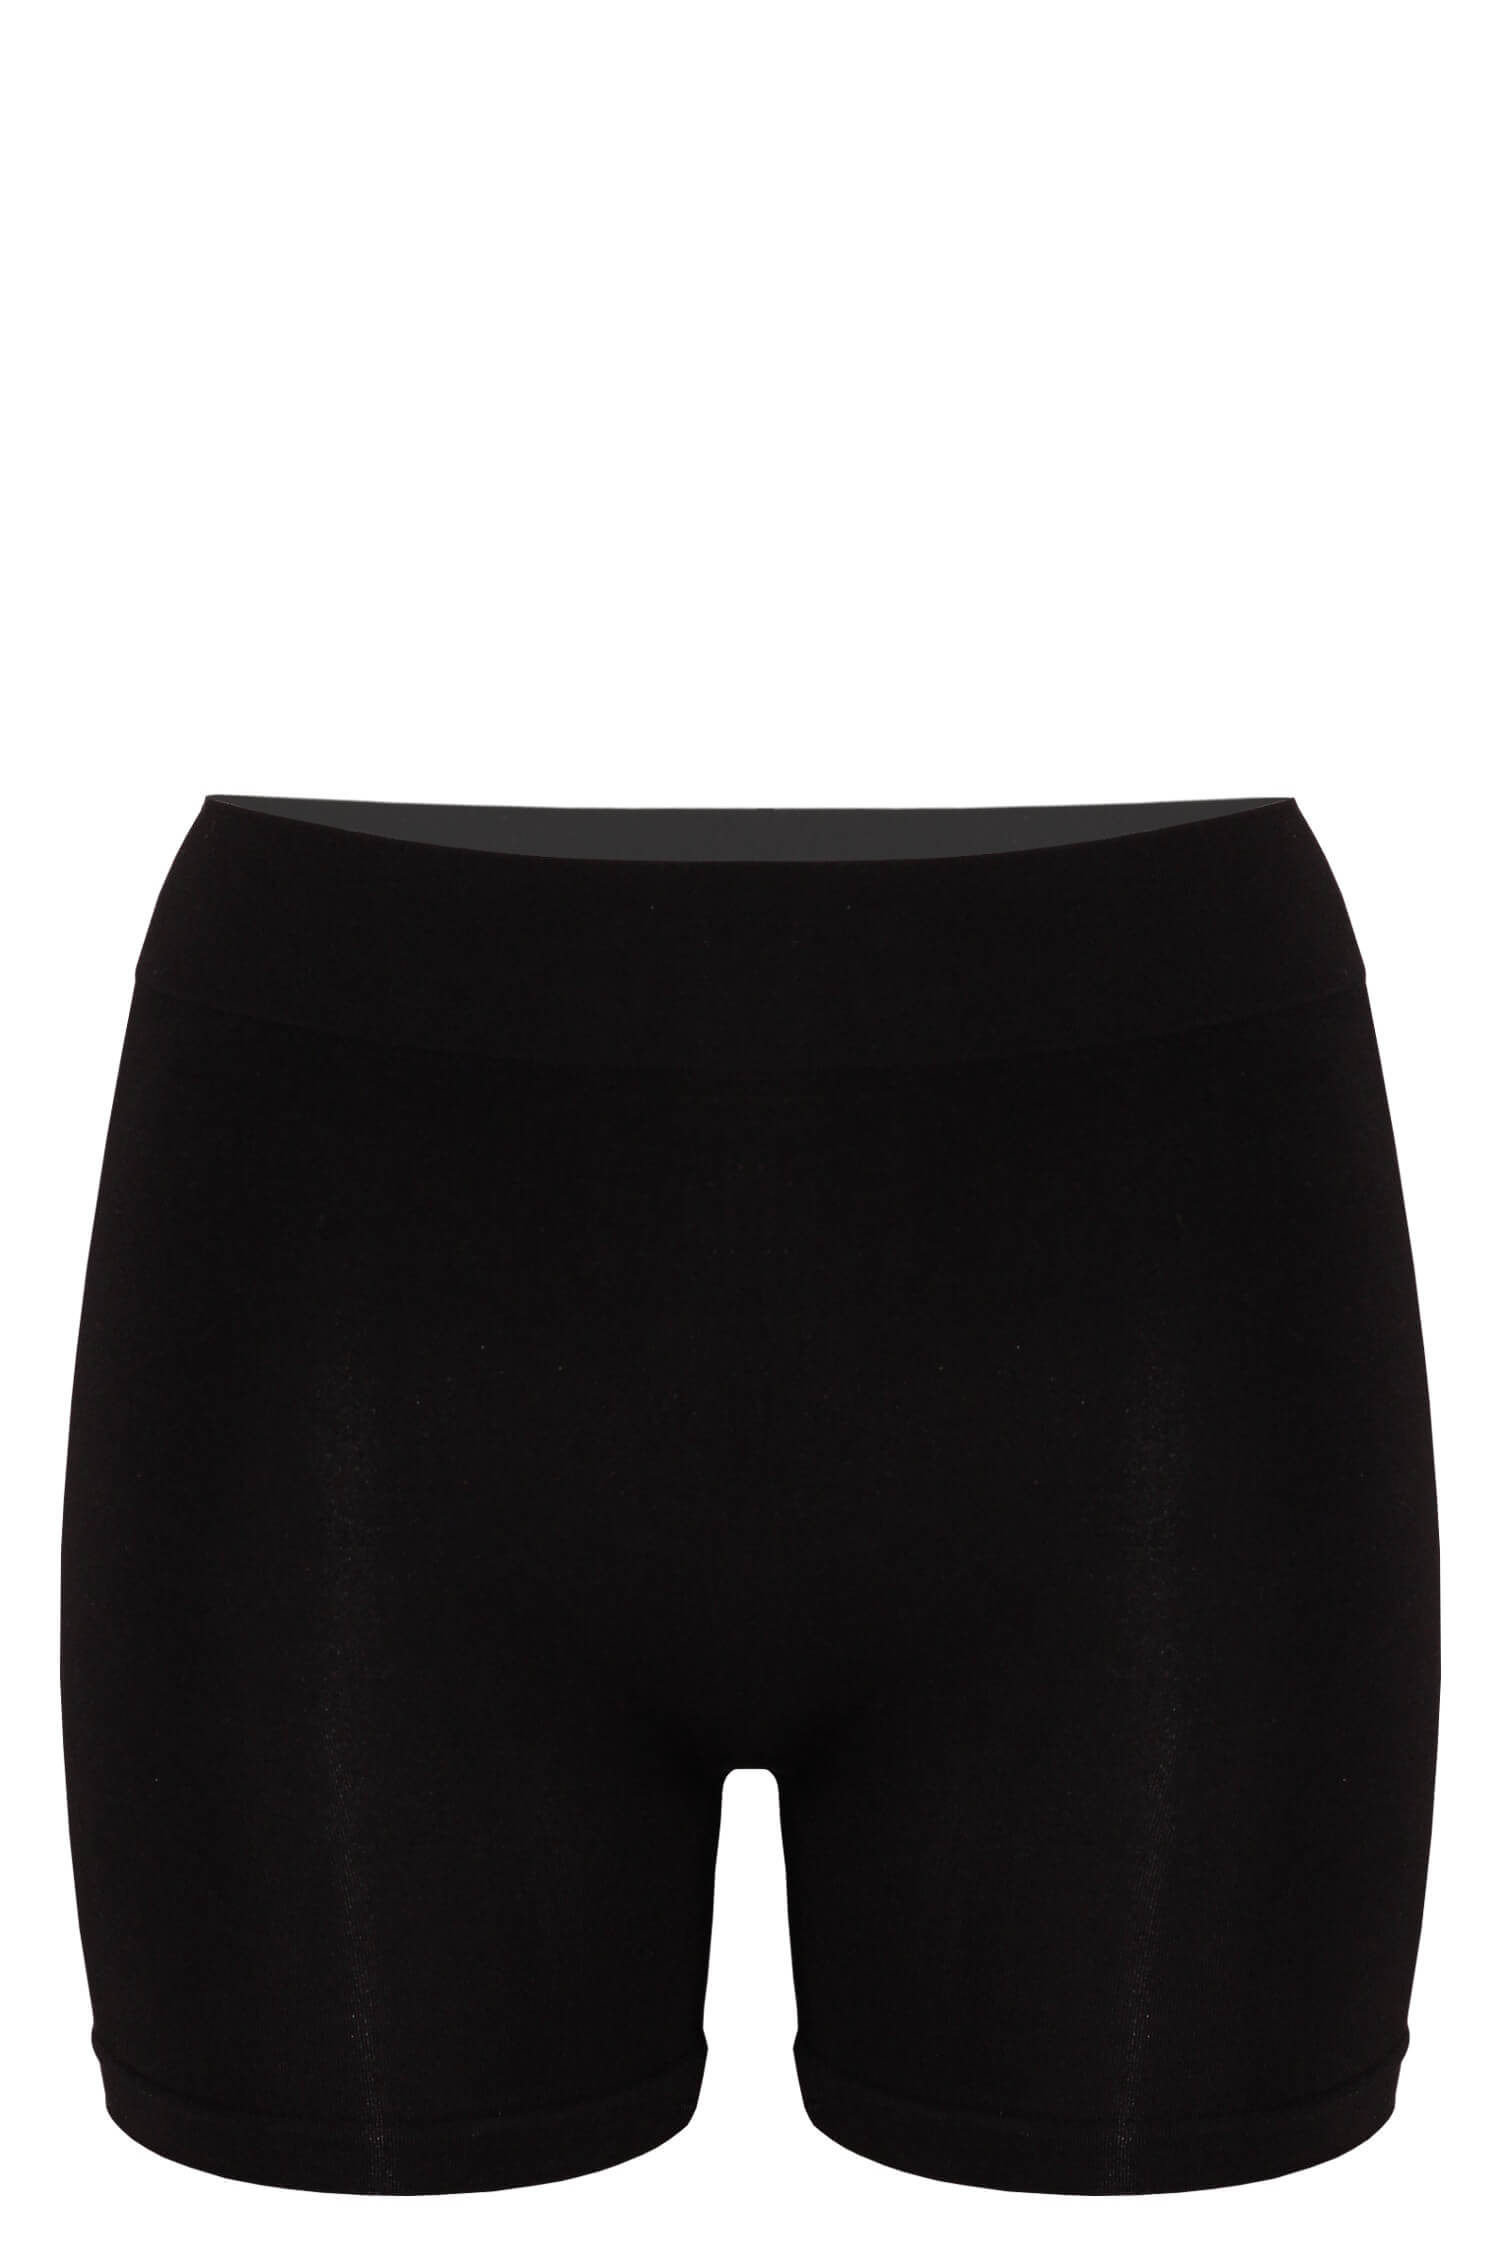 Eva BmBoo kalhotky s nohavičkou dámské Z6103 - 3bal L černá